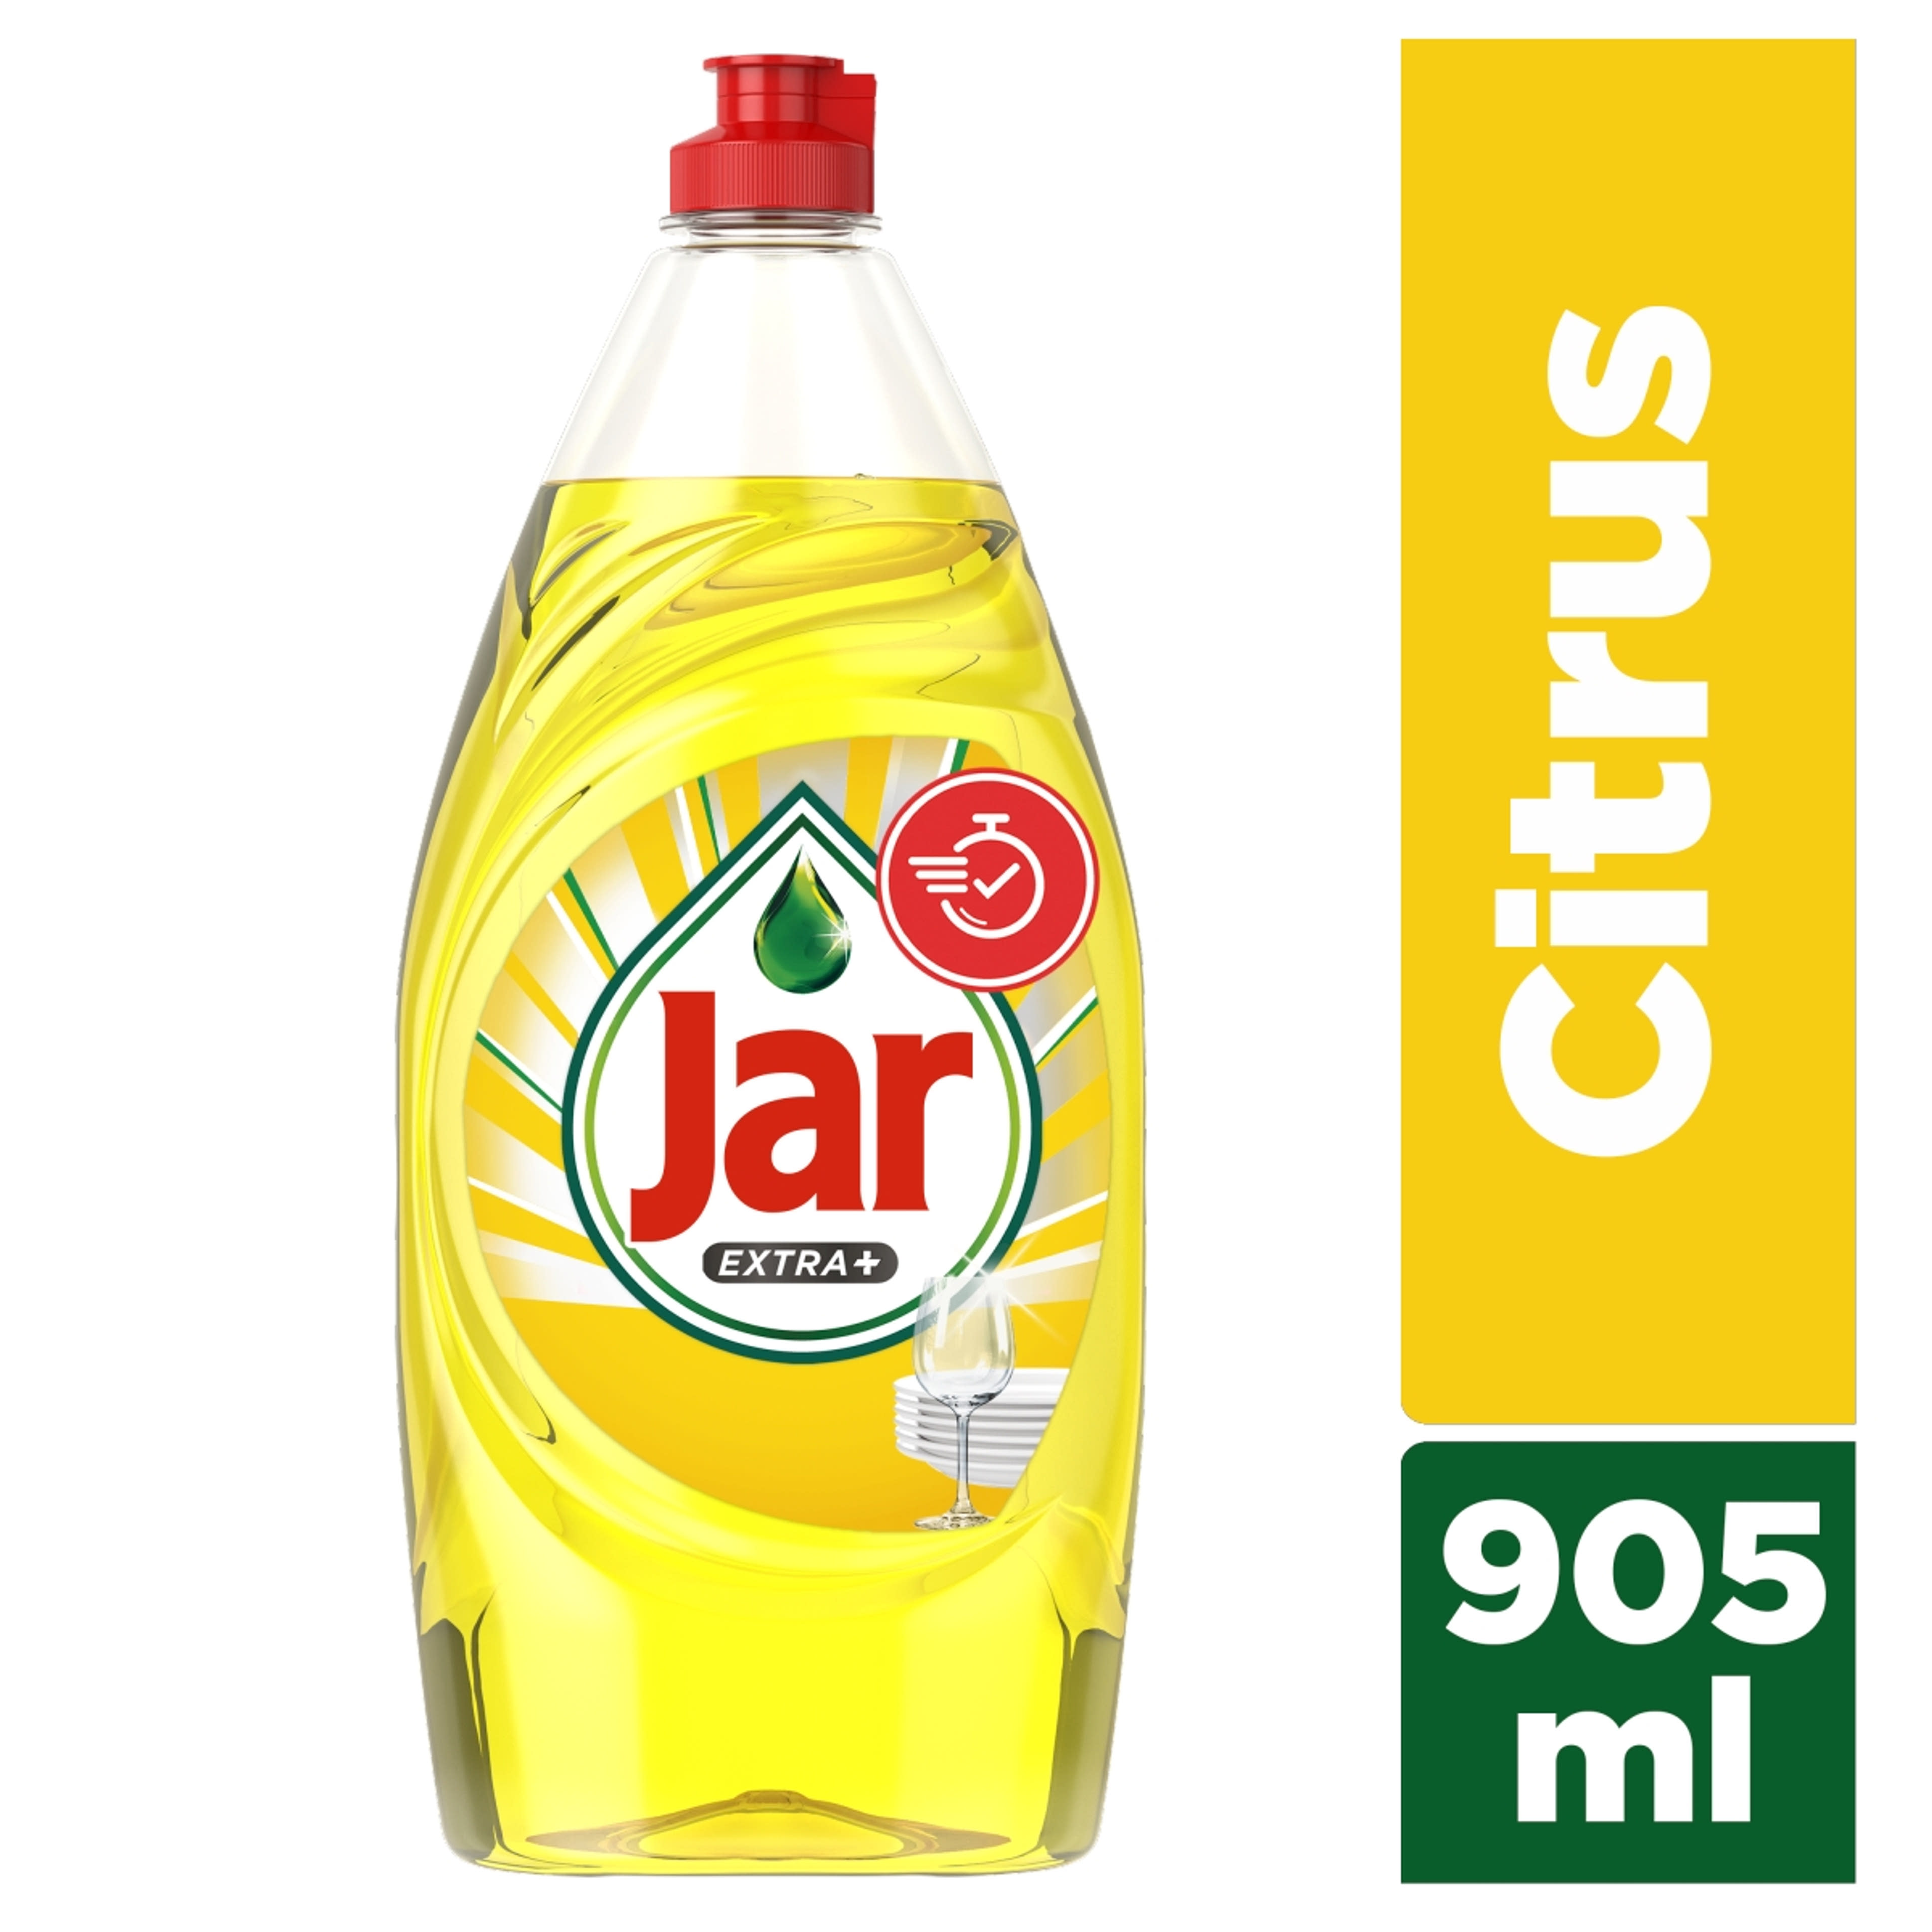 Jar Extra+ mosogatószer citrus illattal - 905ml-2